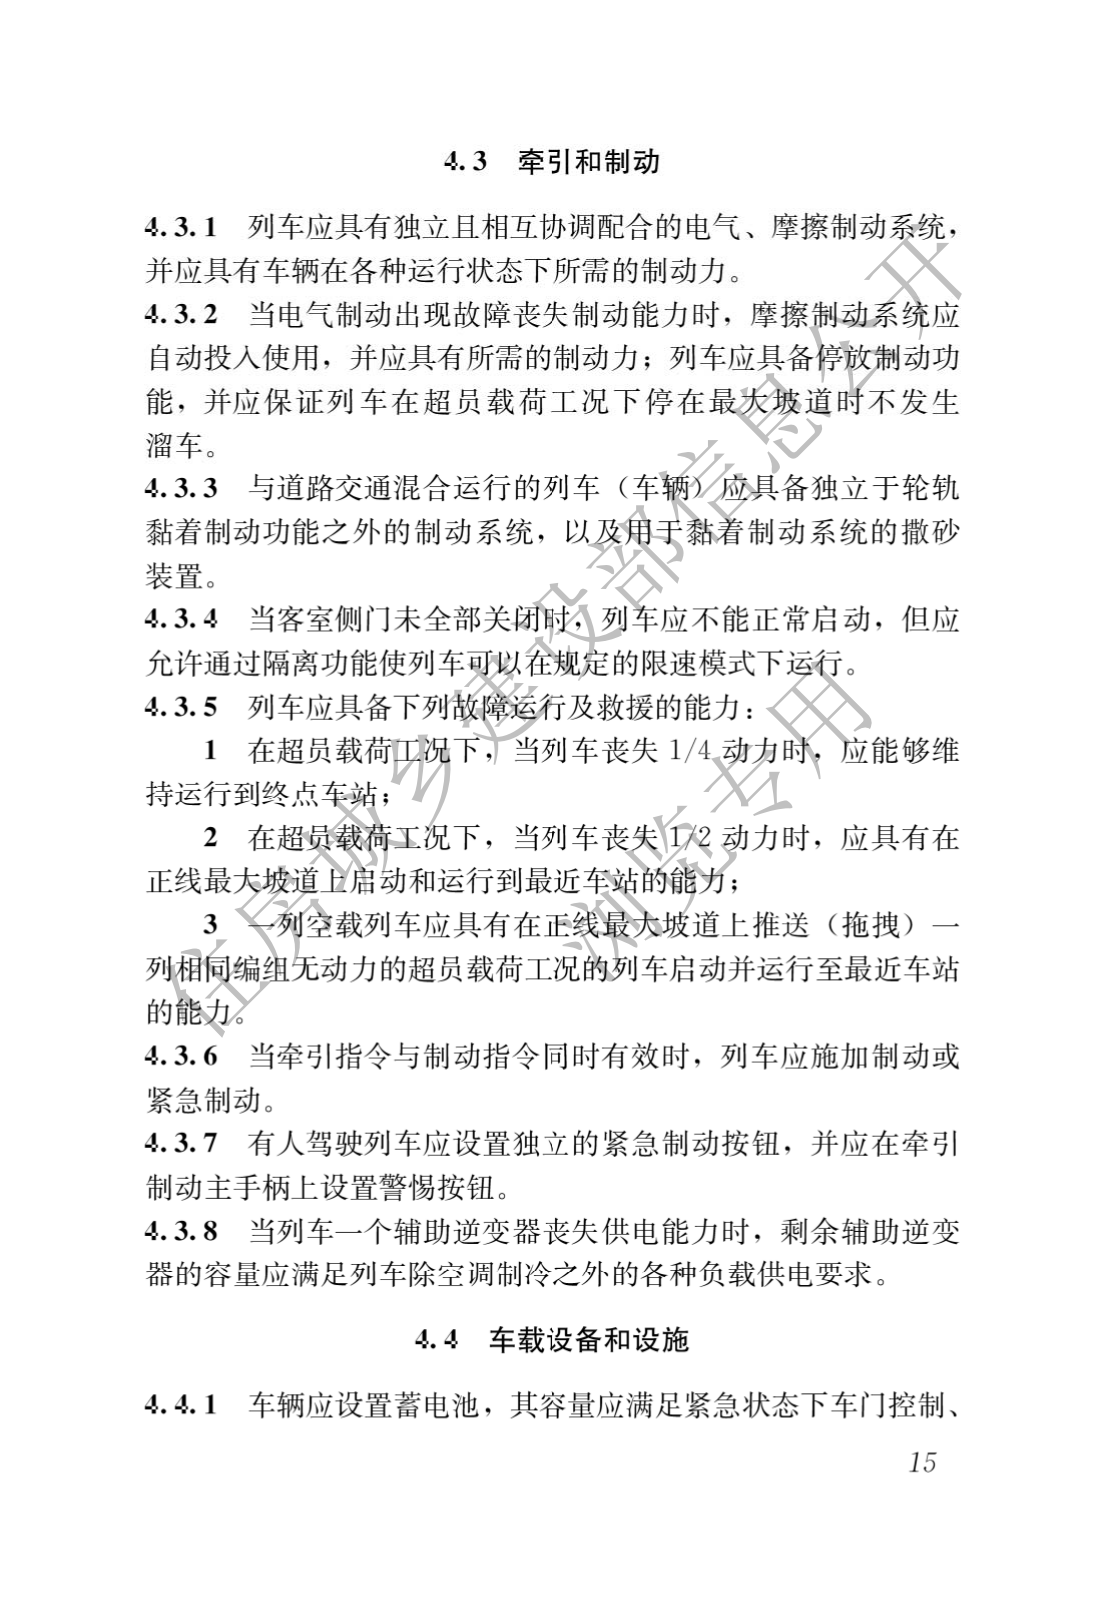 住房和城鄉建設部關于發布國家标準 《城市軌道交通工(gōng)程項目規範》的公告(圖19)